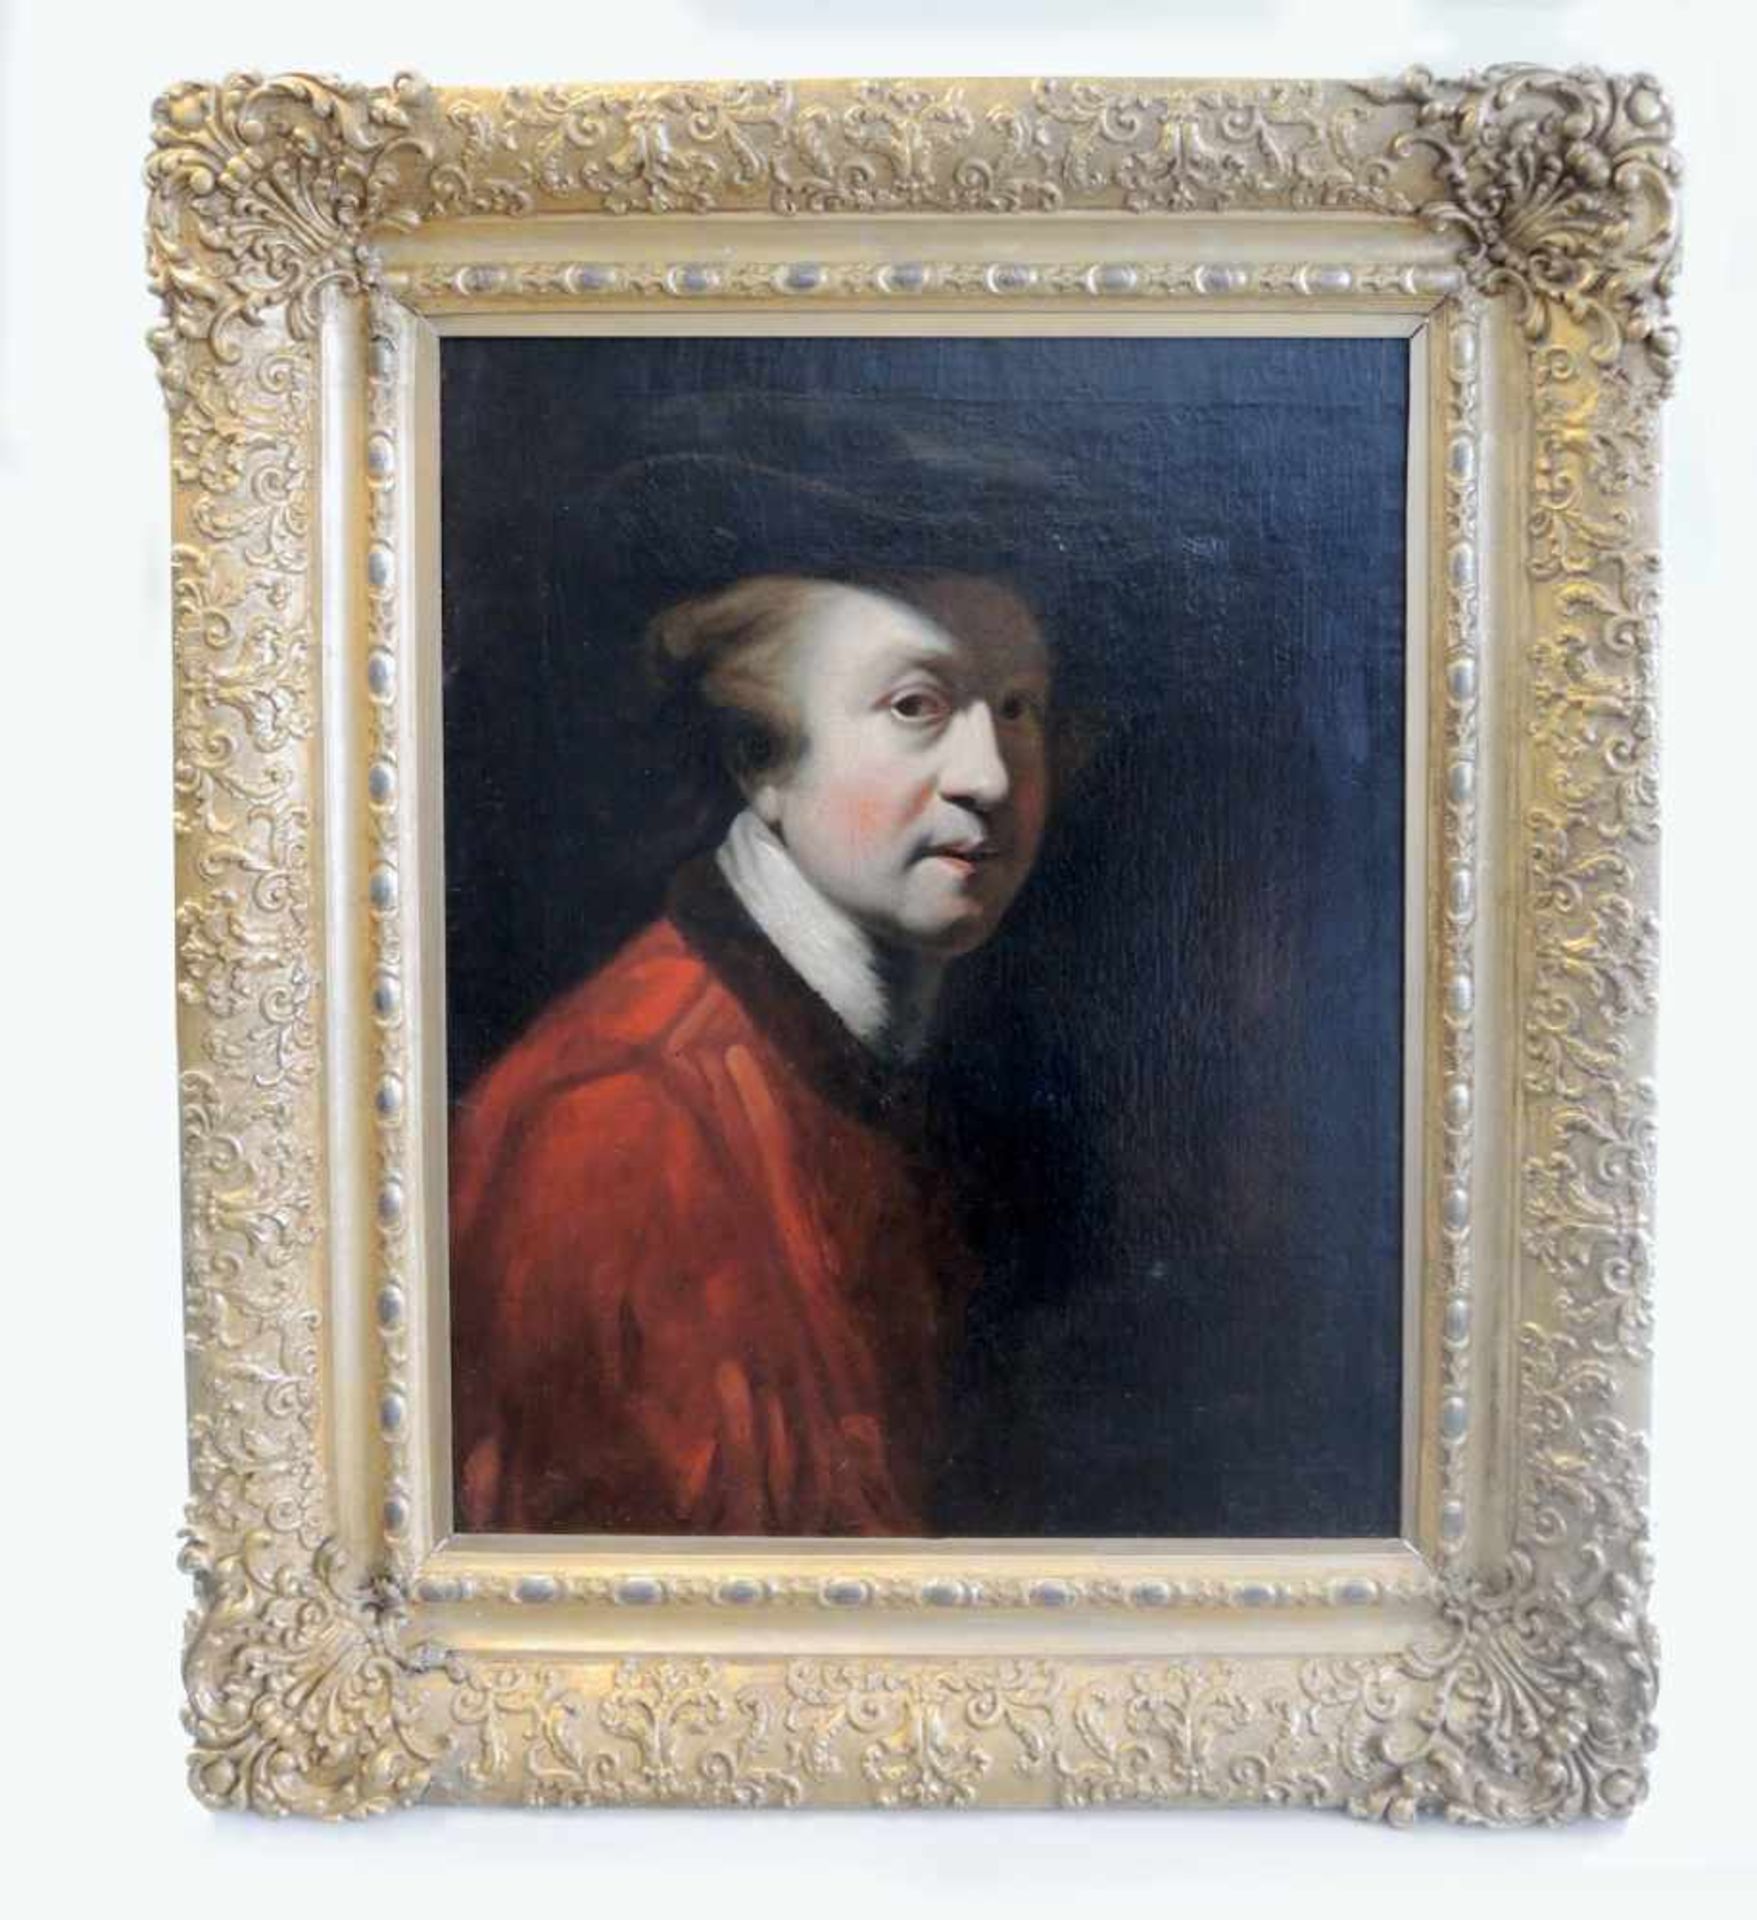 Porträt von Sir Joshua ReynoldsÖl/Leinwand. Teils doub., verso undeutlich beschriftet, wohl "A.M. - Image 2 of 2